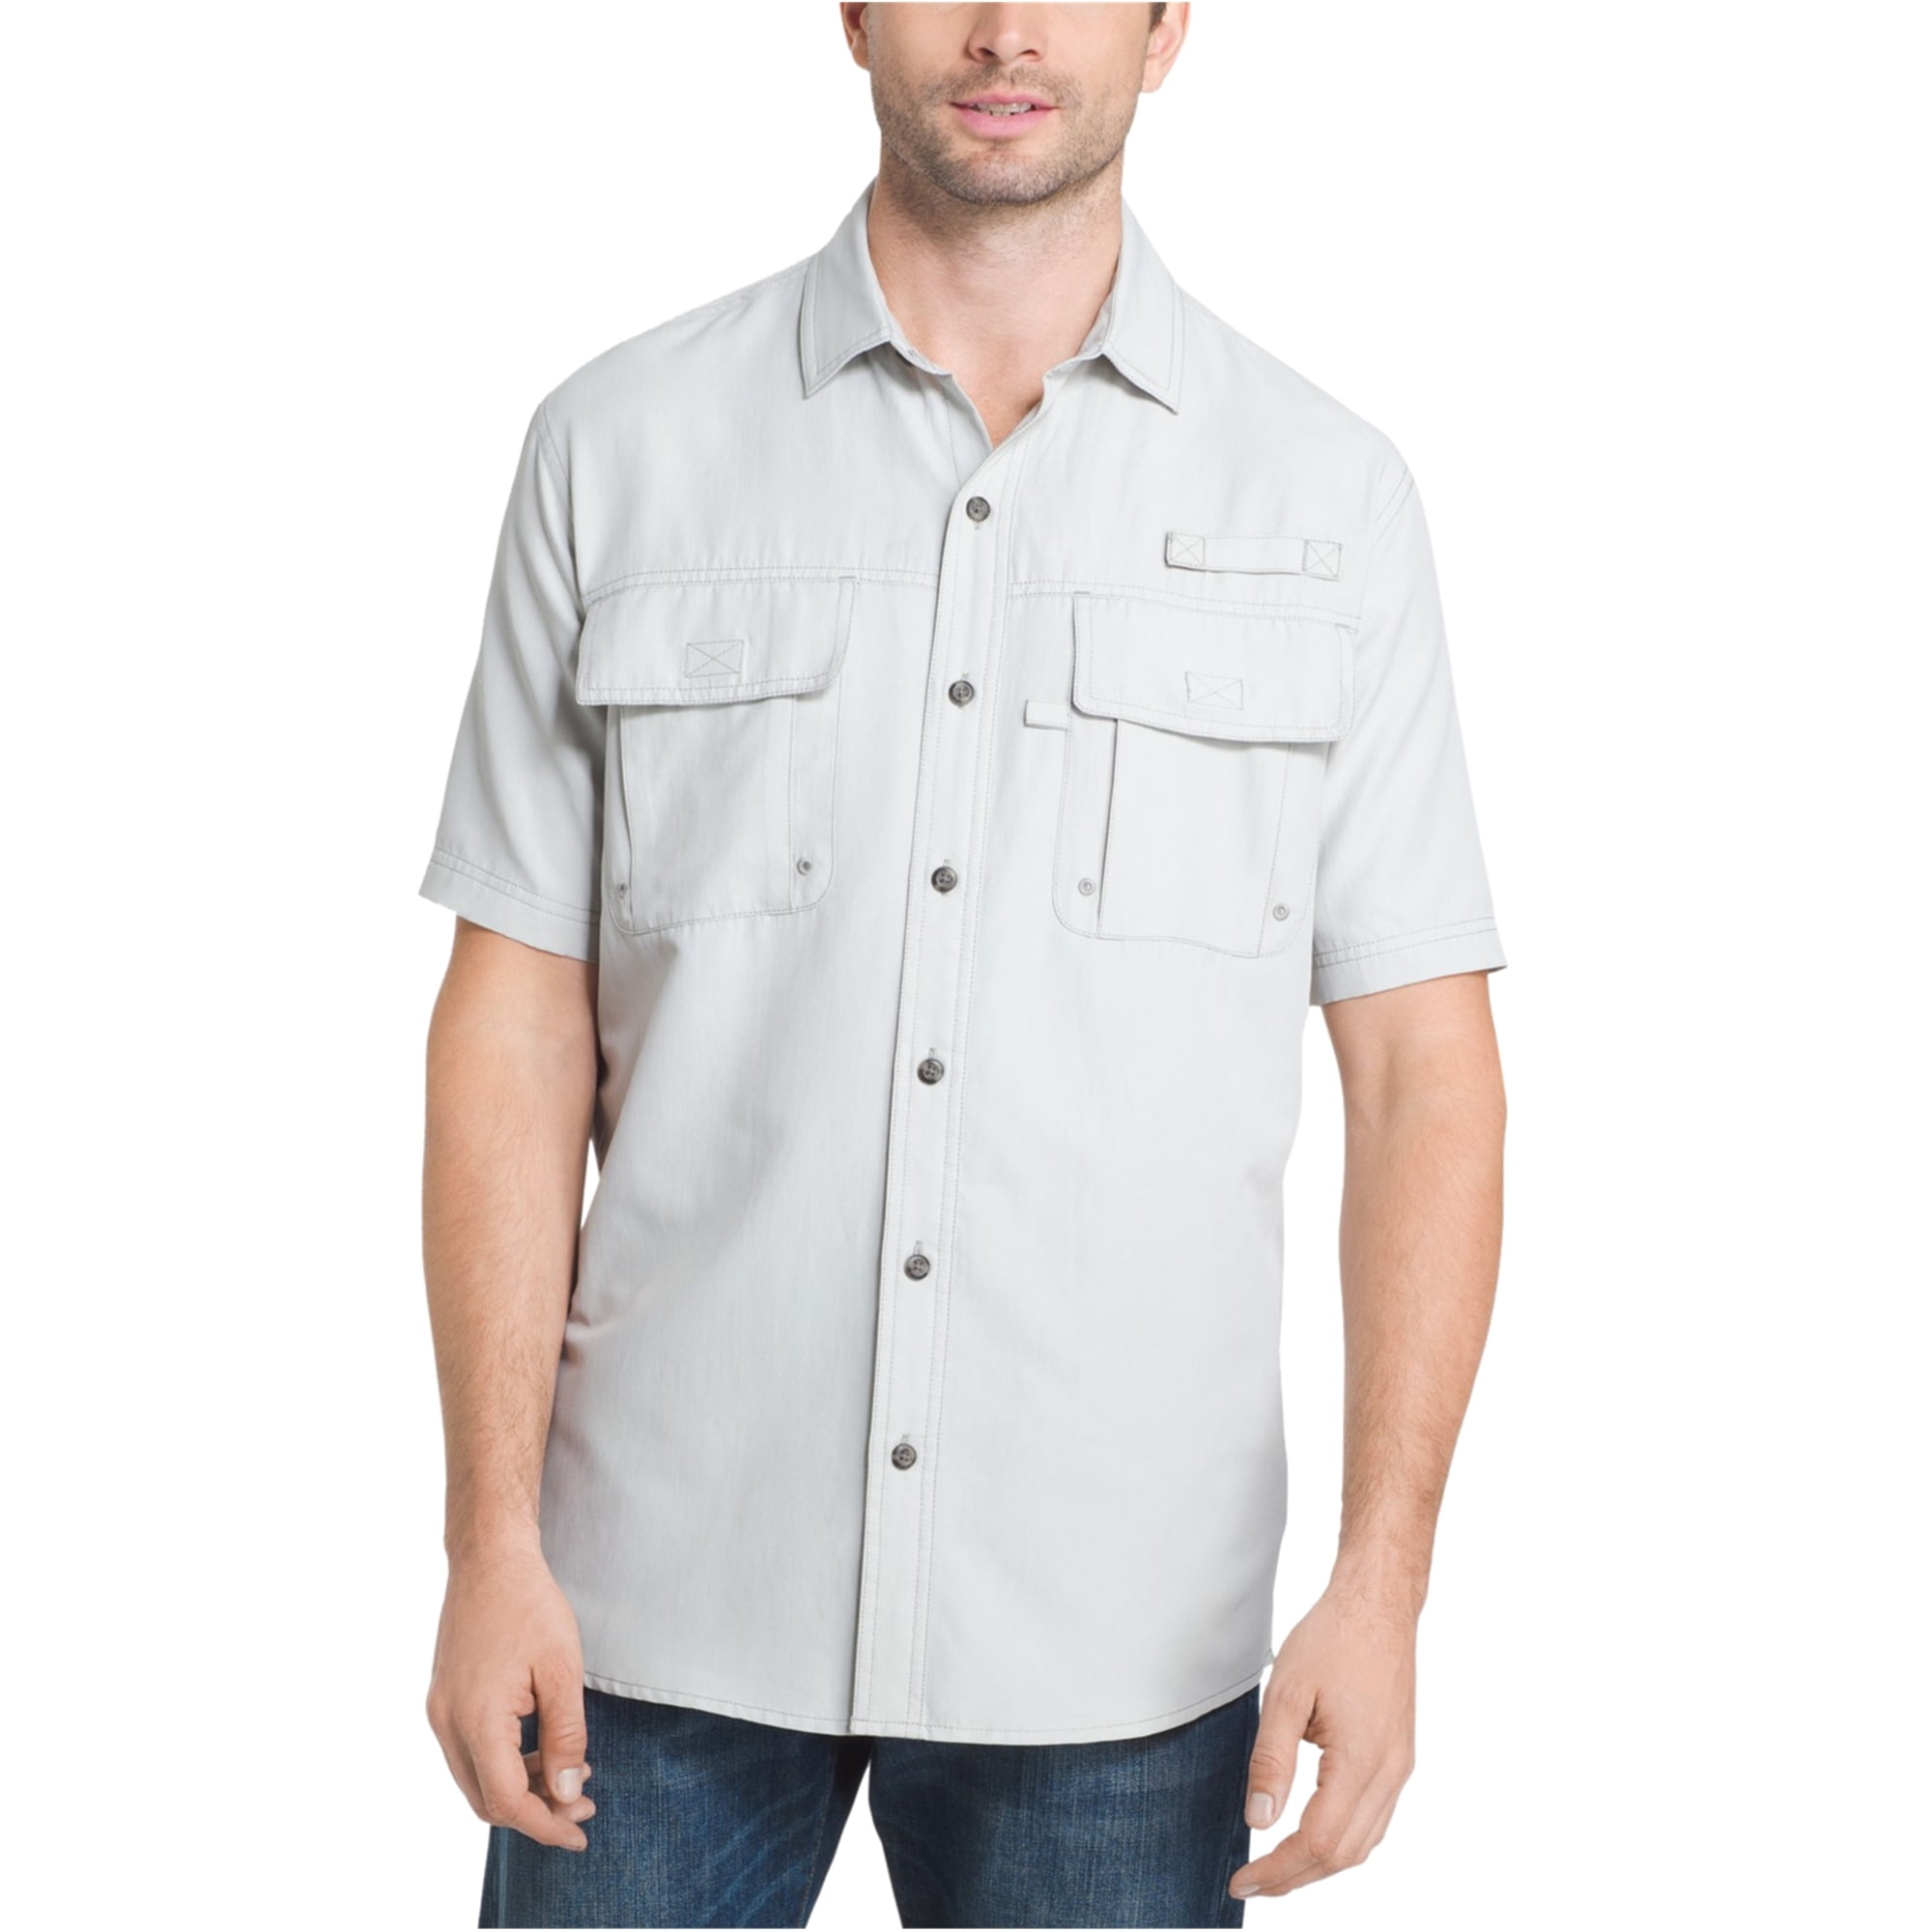 Mens Salt Cove Soft Short Sleeve Button Down Shirt G.H Bass & Co 